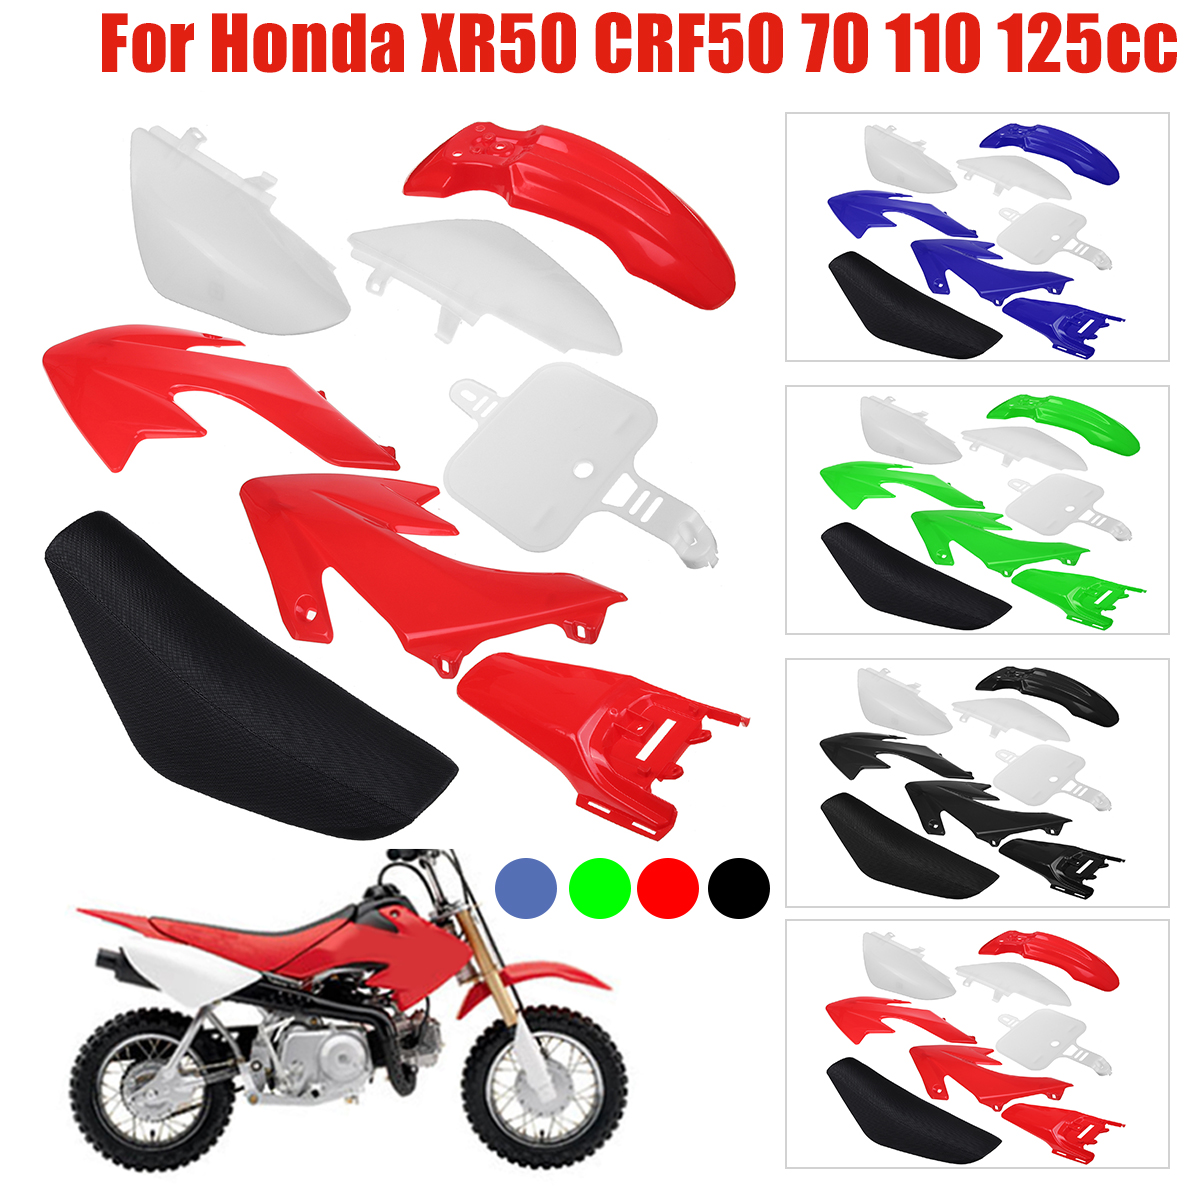 Motorcycle Flat Tall Seat+Plastics Fender Kits Honda CRF50 XR50 150cc Dirt Bike 